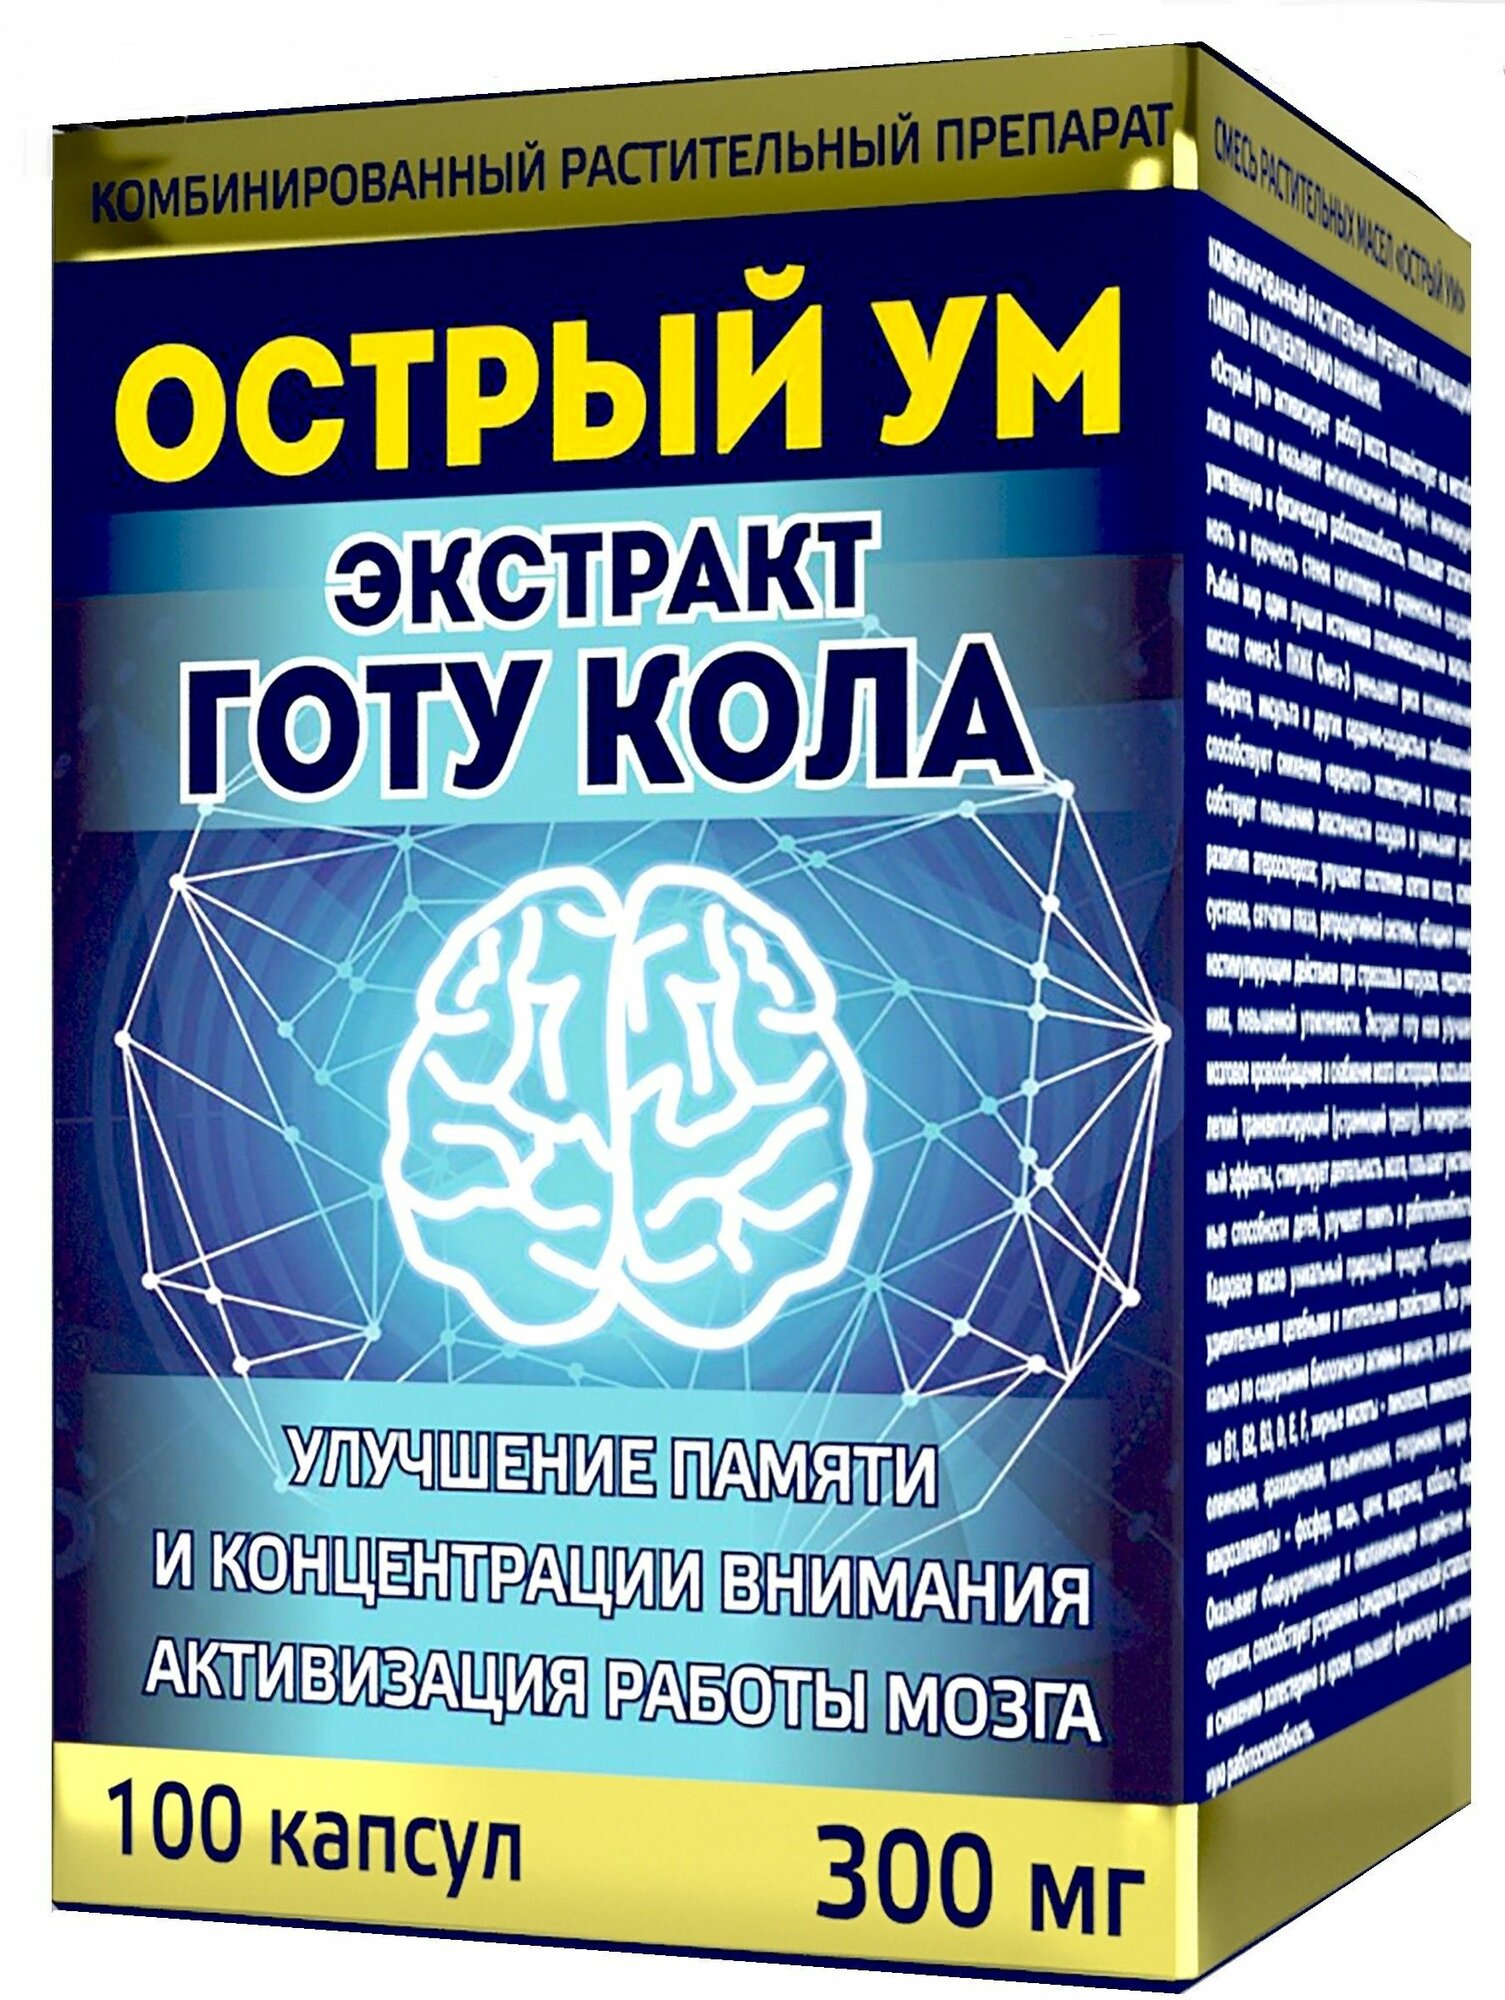 Комбинированный растительный препарат "Острый ум" экстракт готу кола Саната 300 мг.